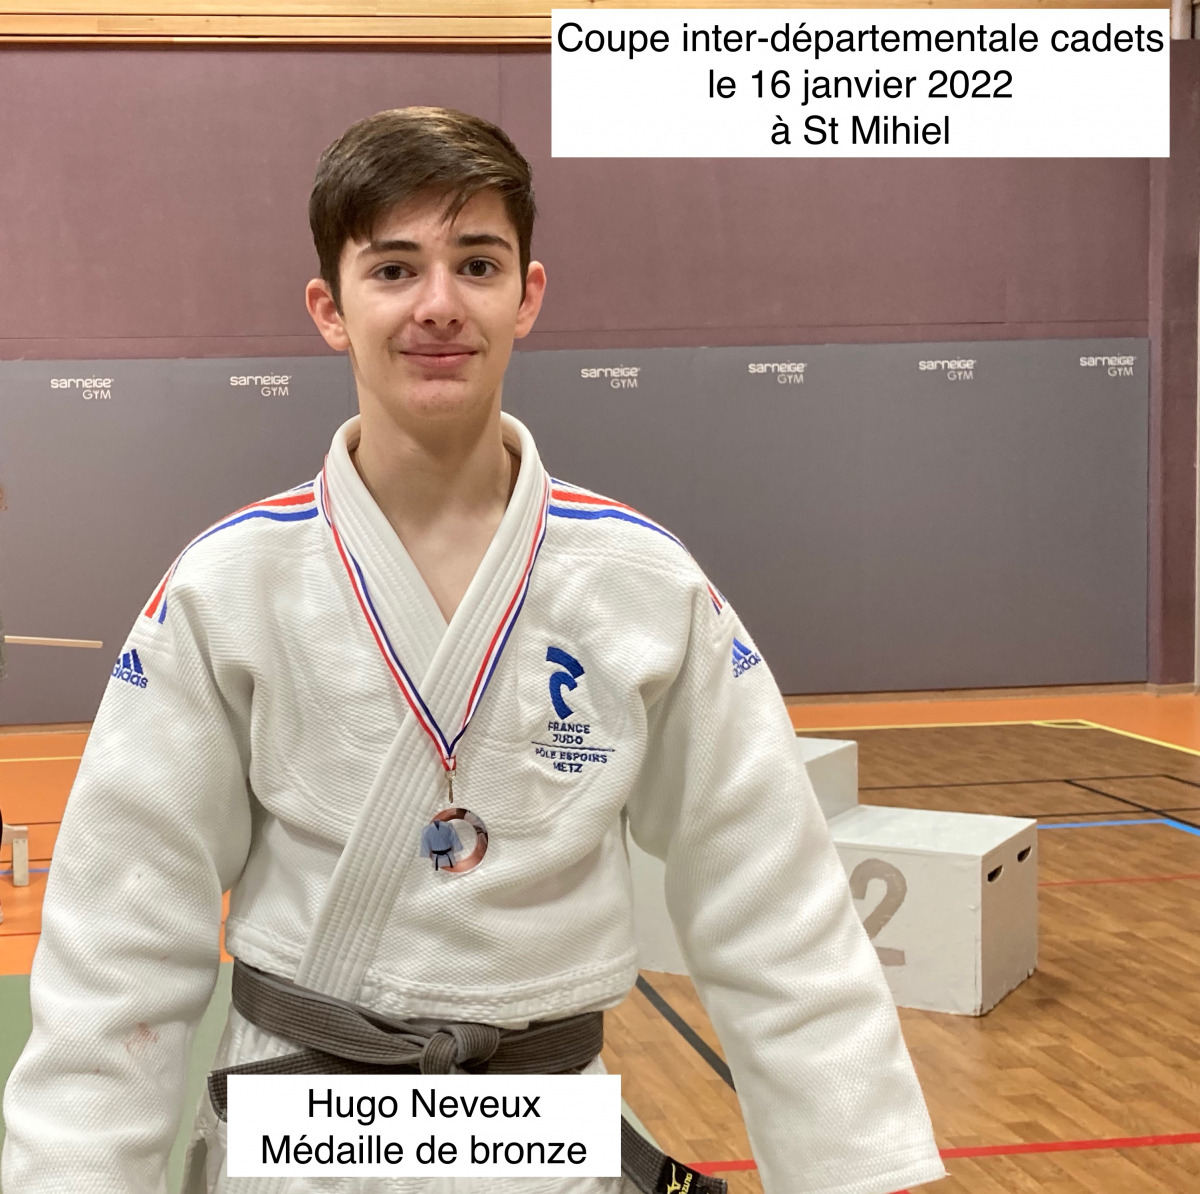  Hugo Neveux médaille de bronze !